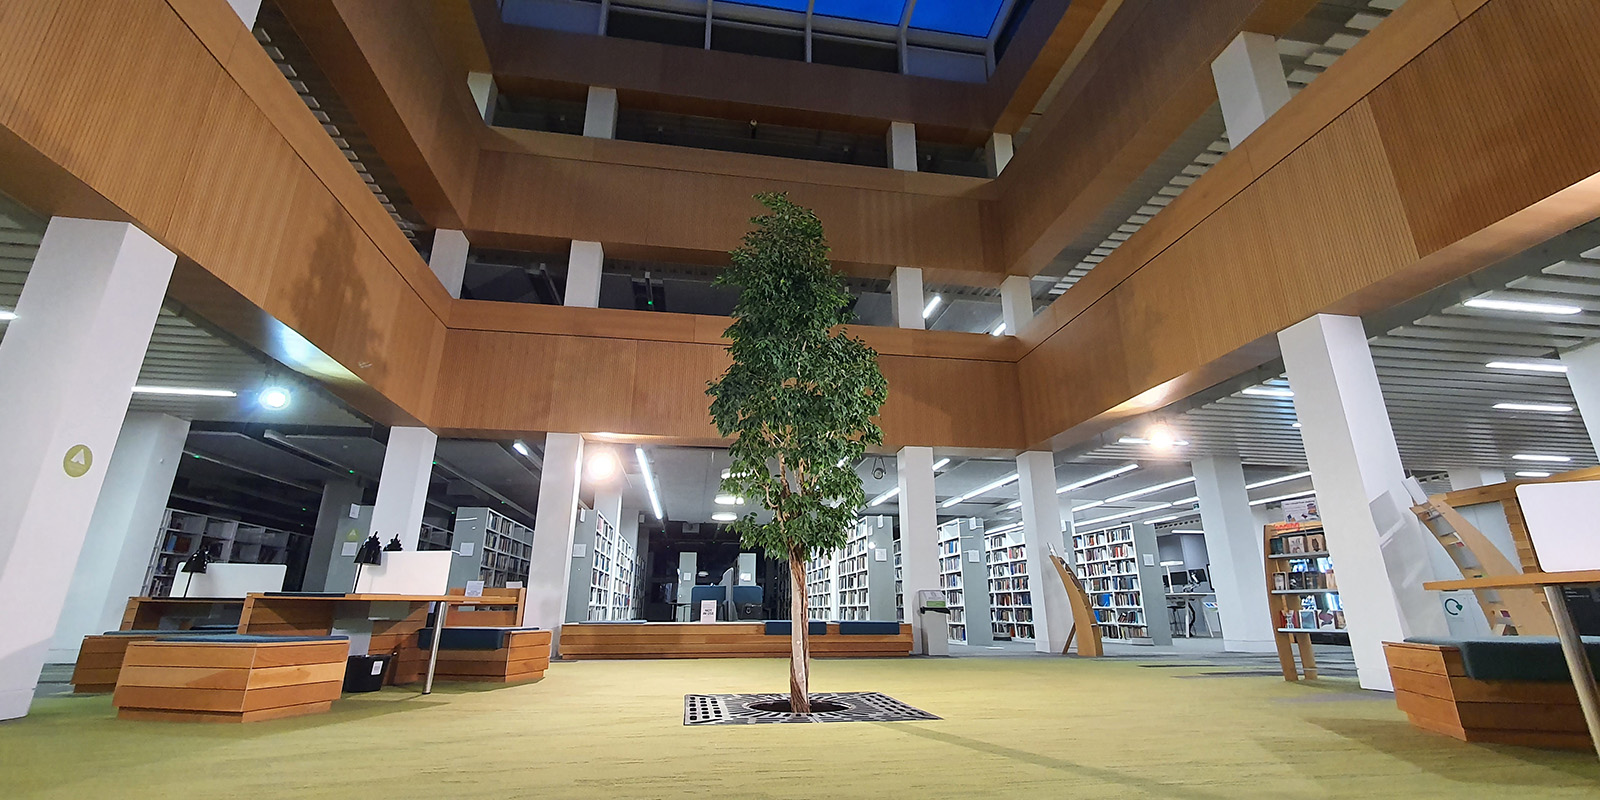 大秀视频 library foyer with the living tree in the centre.